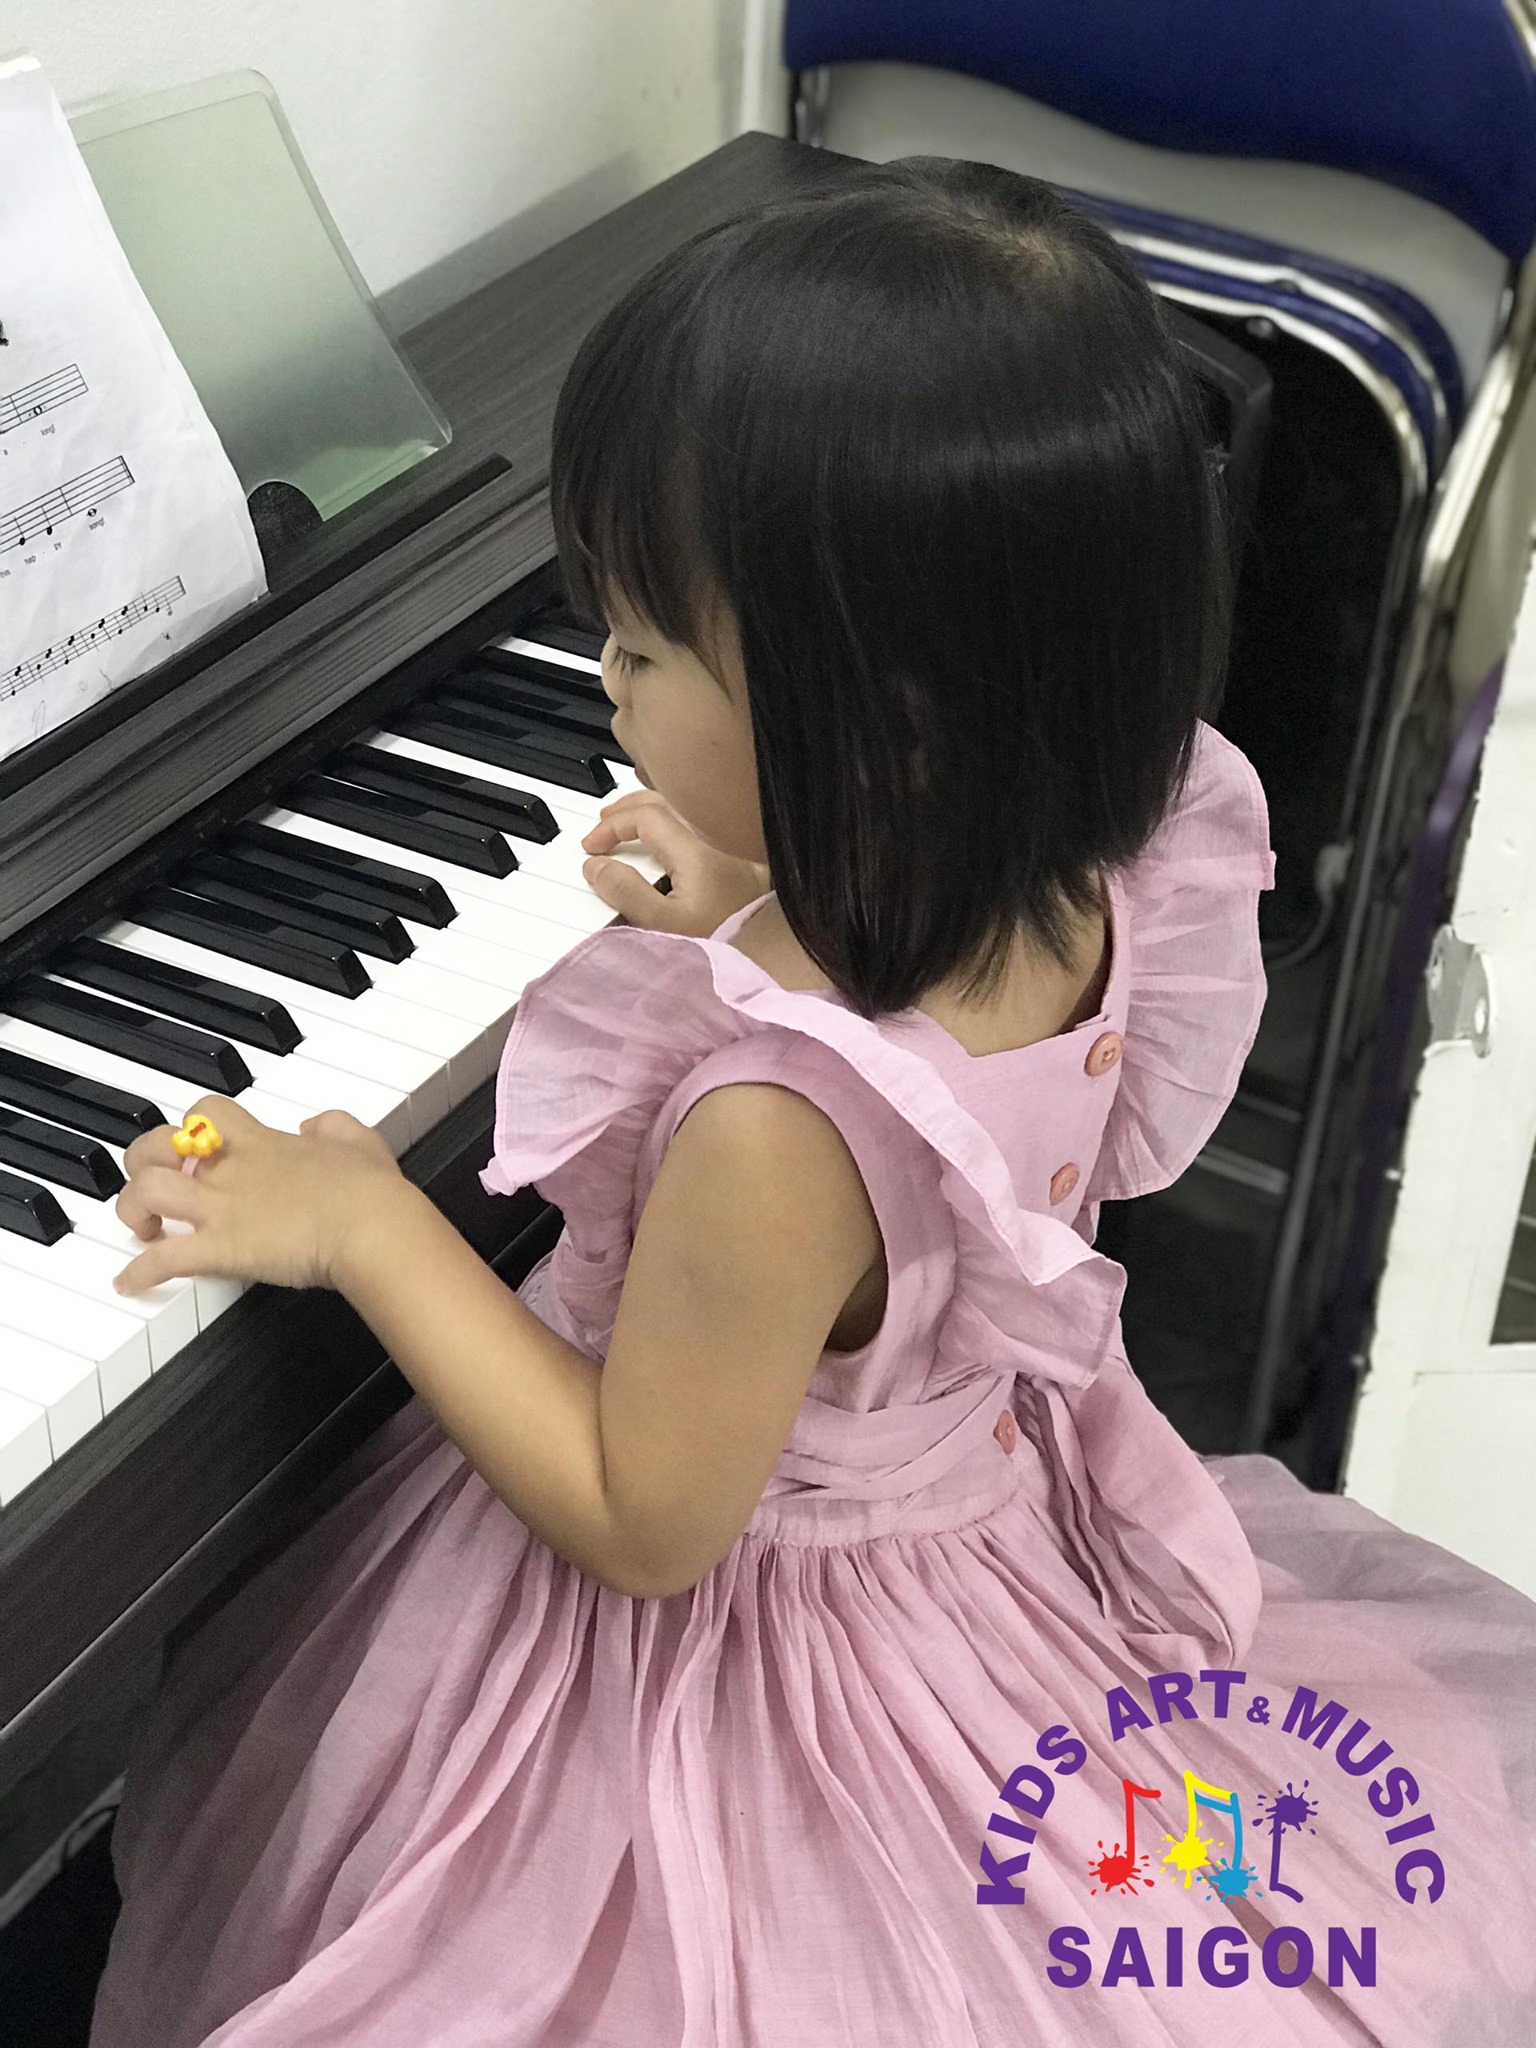 Tham khảo cách dạy đàn piano cho trẻ tại nhà hiệu quả - hình ảnh 3